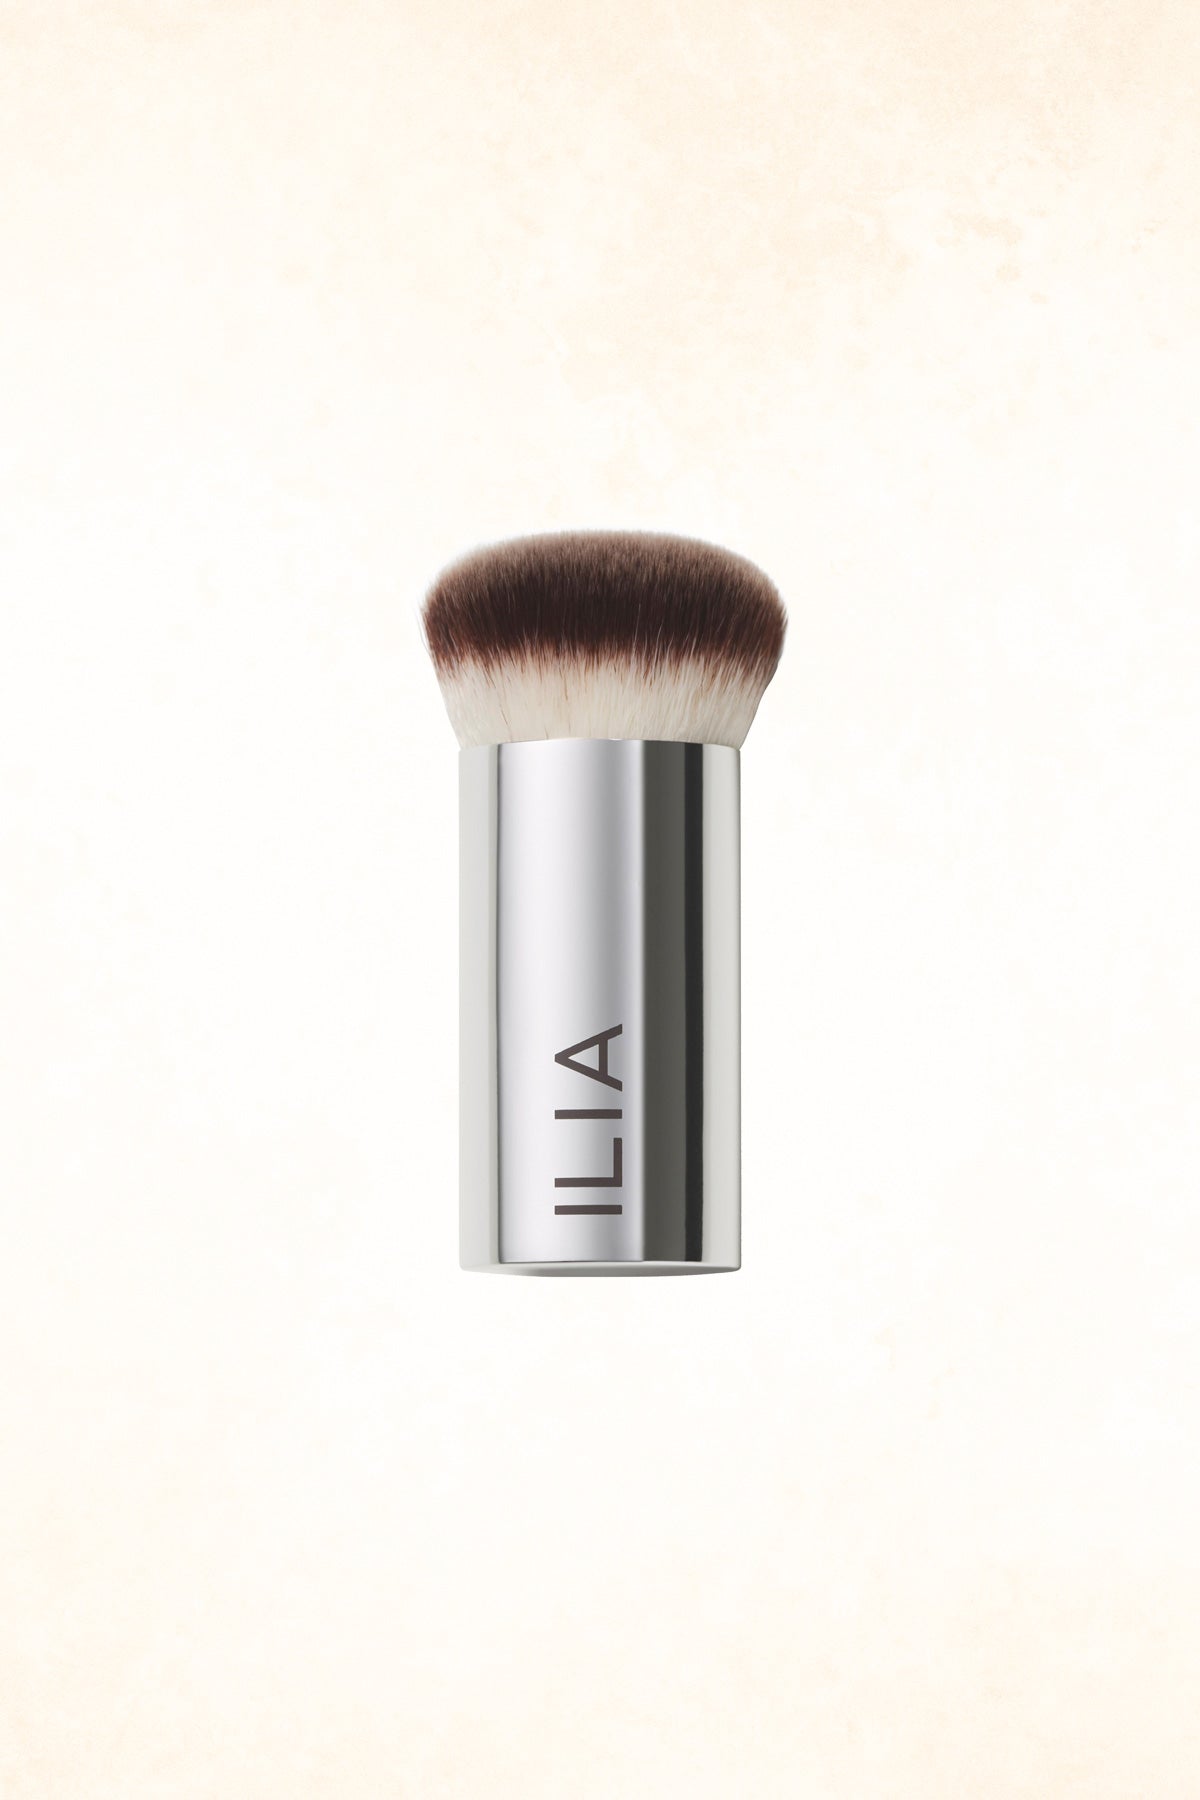 ILIA - Perfecting Buff Brush